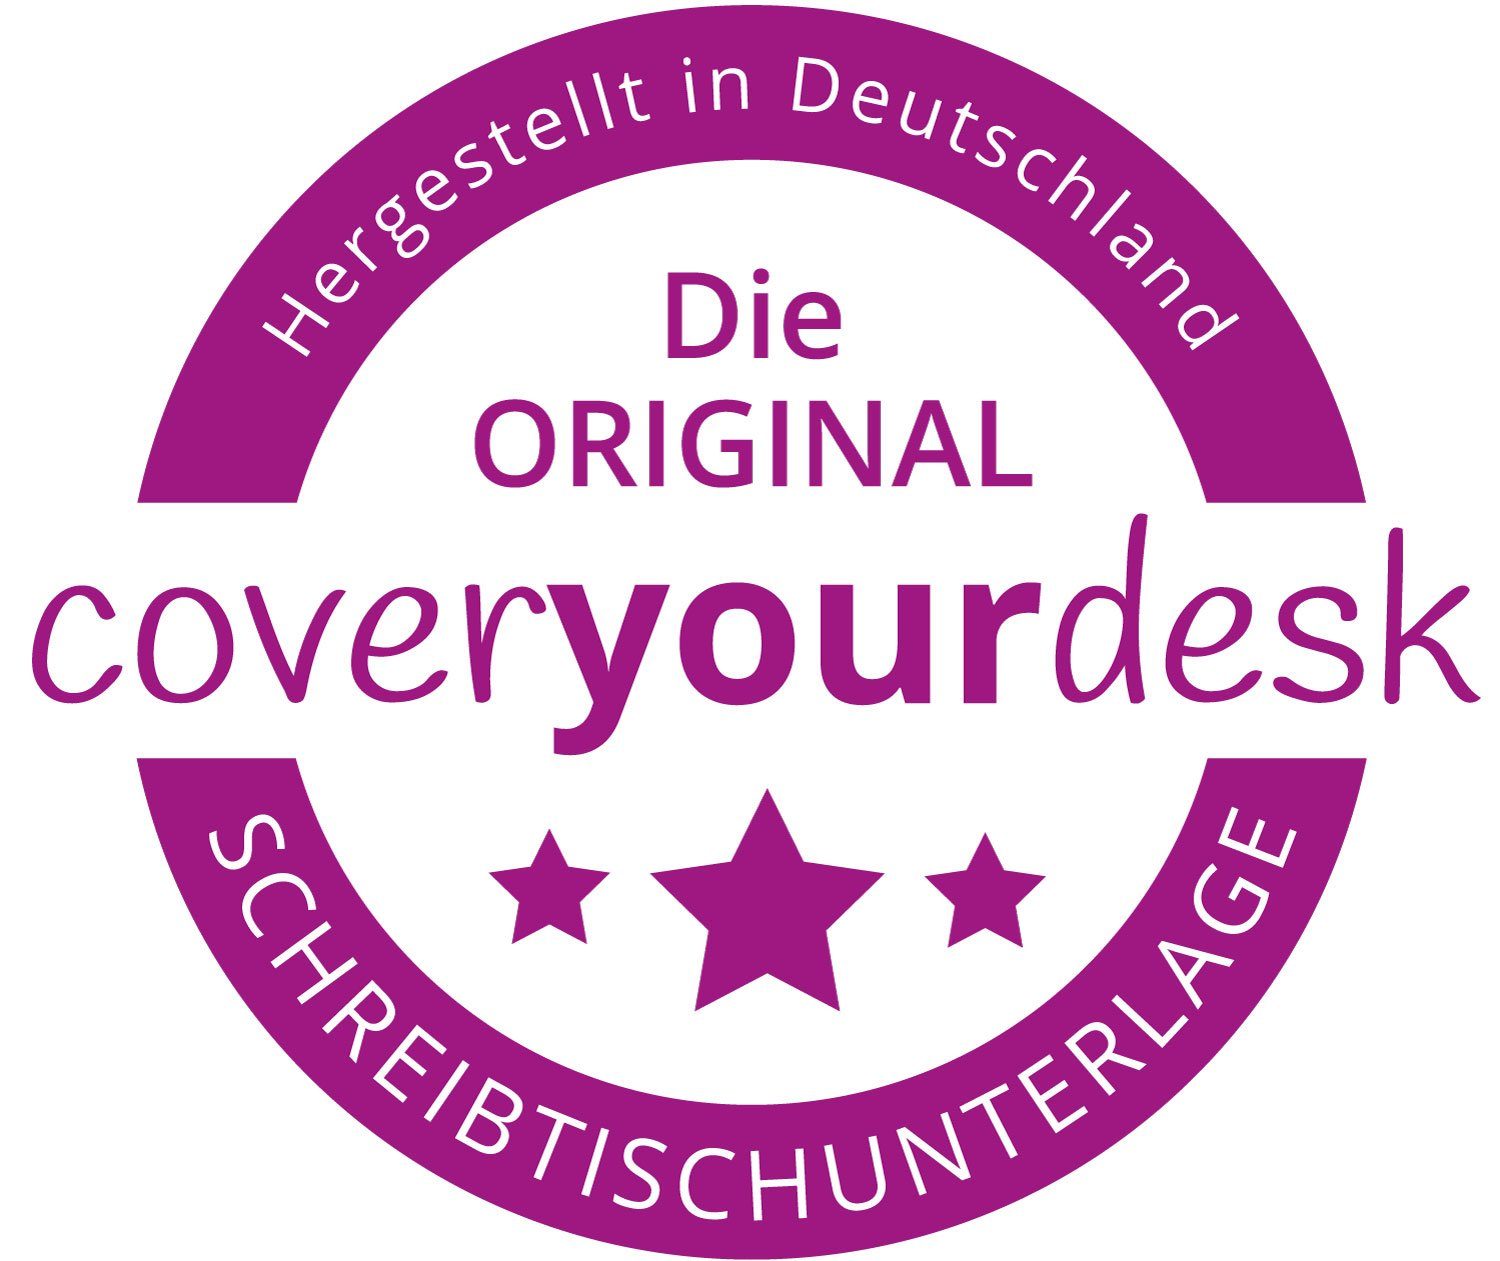 (1-St) Germany, – mit cover-your-desk.de abwaschbar – Vinyl– Traumstrand Made Muscheln in Schreibtischaufsatz premium